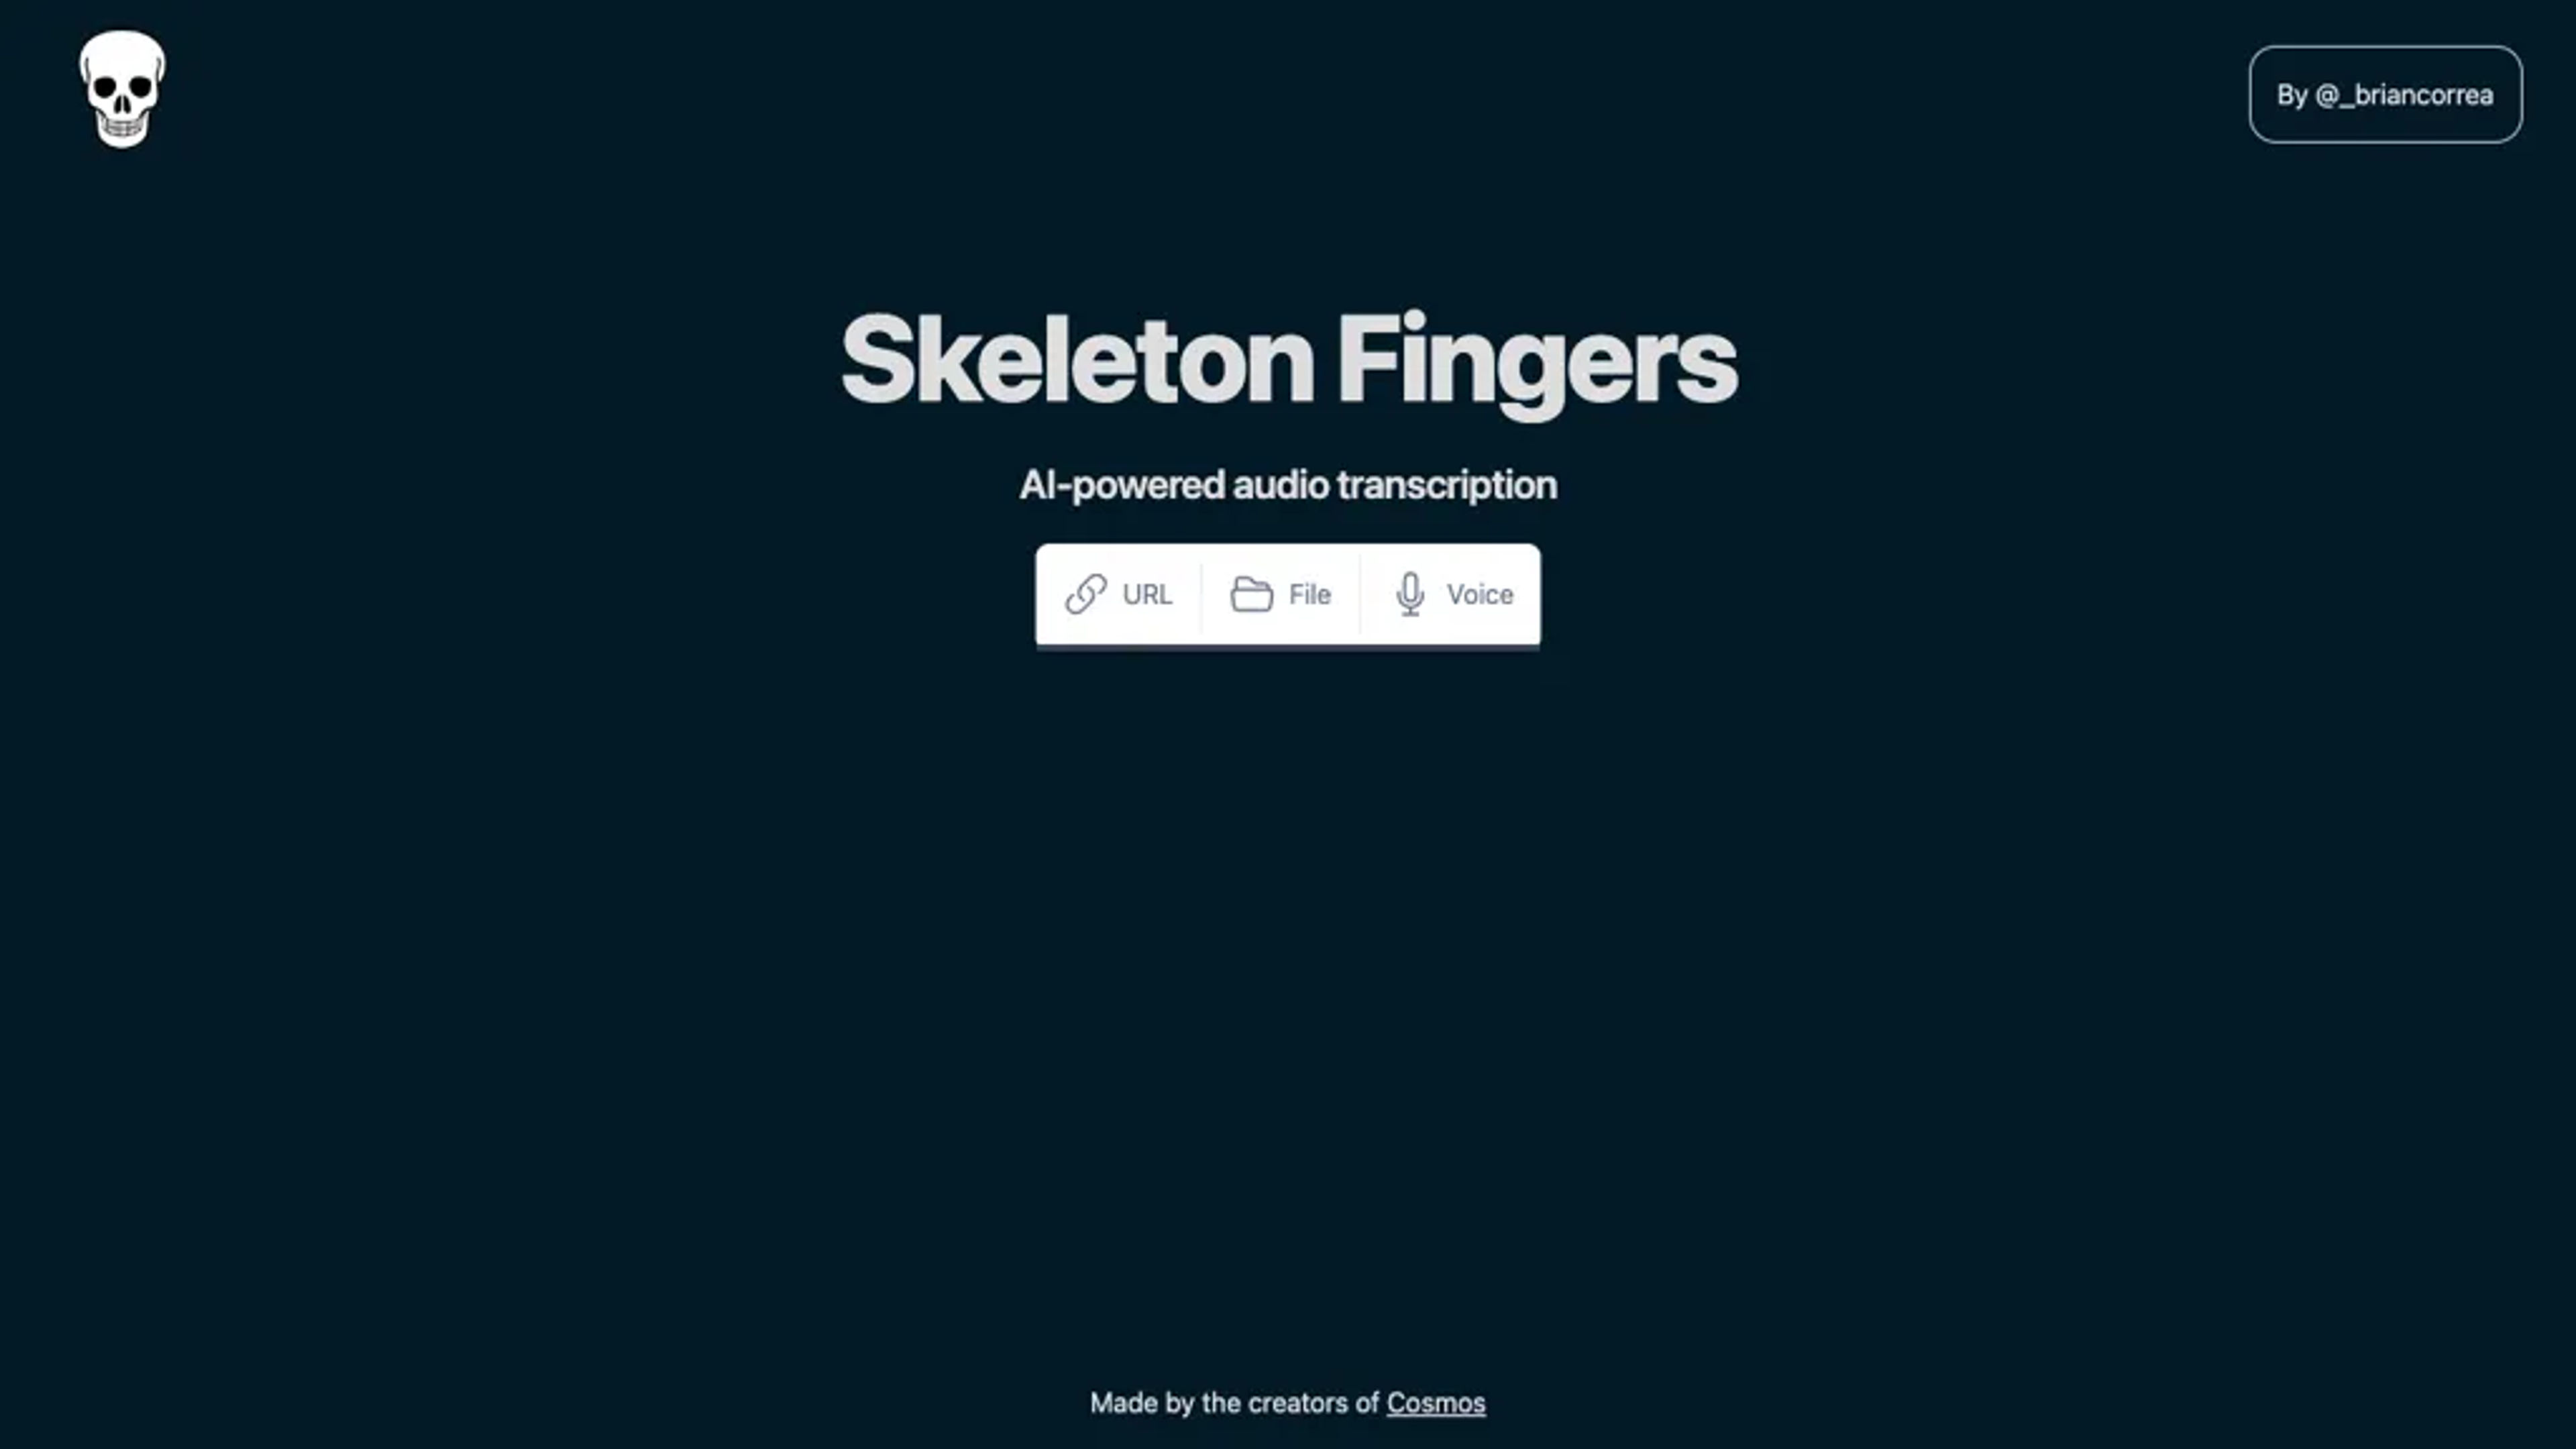 Skeleton Fingers